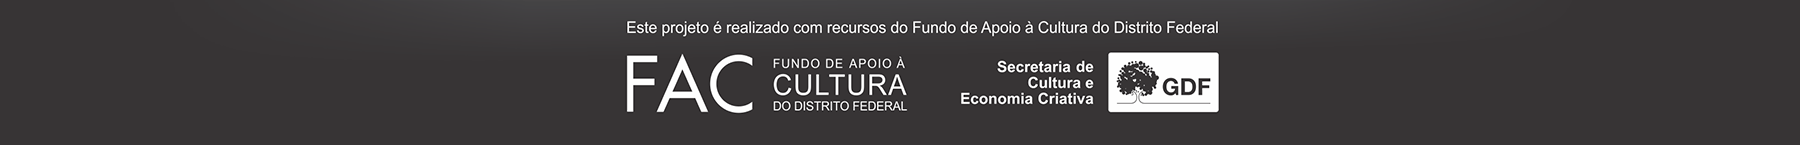 Faixa de patrocínio: FAC (Fundo de Apoio à Cultura do Distrito Federal) e SECEC/DF